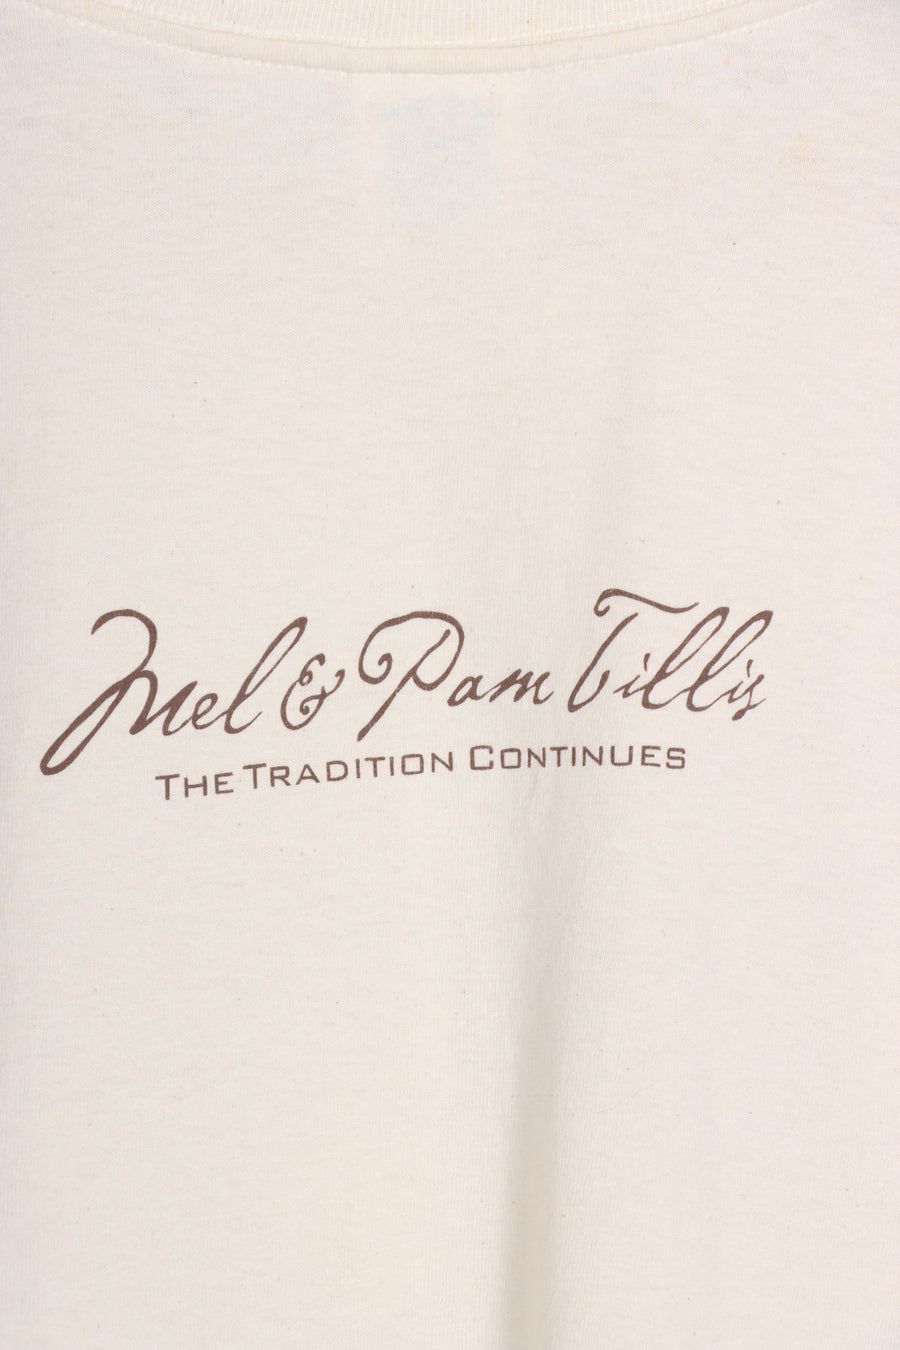 Mel & Pam Tillis Country Music Merch Cream Tee (XL)